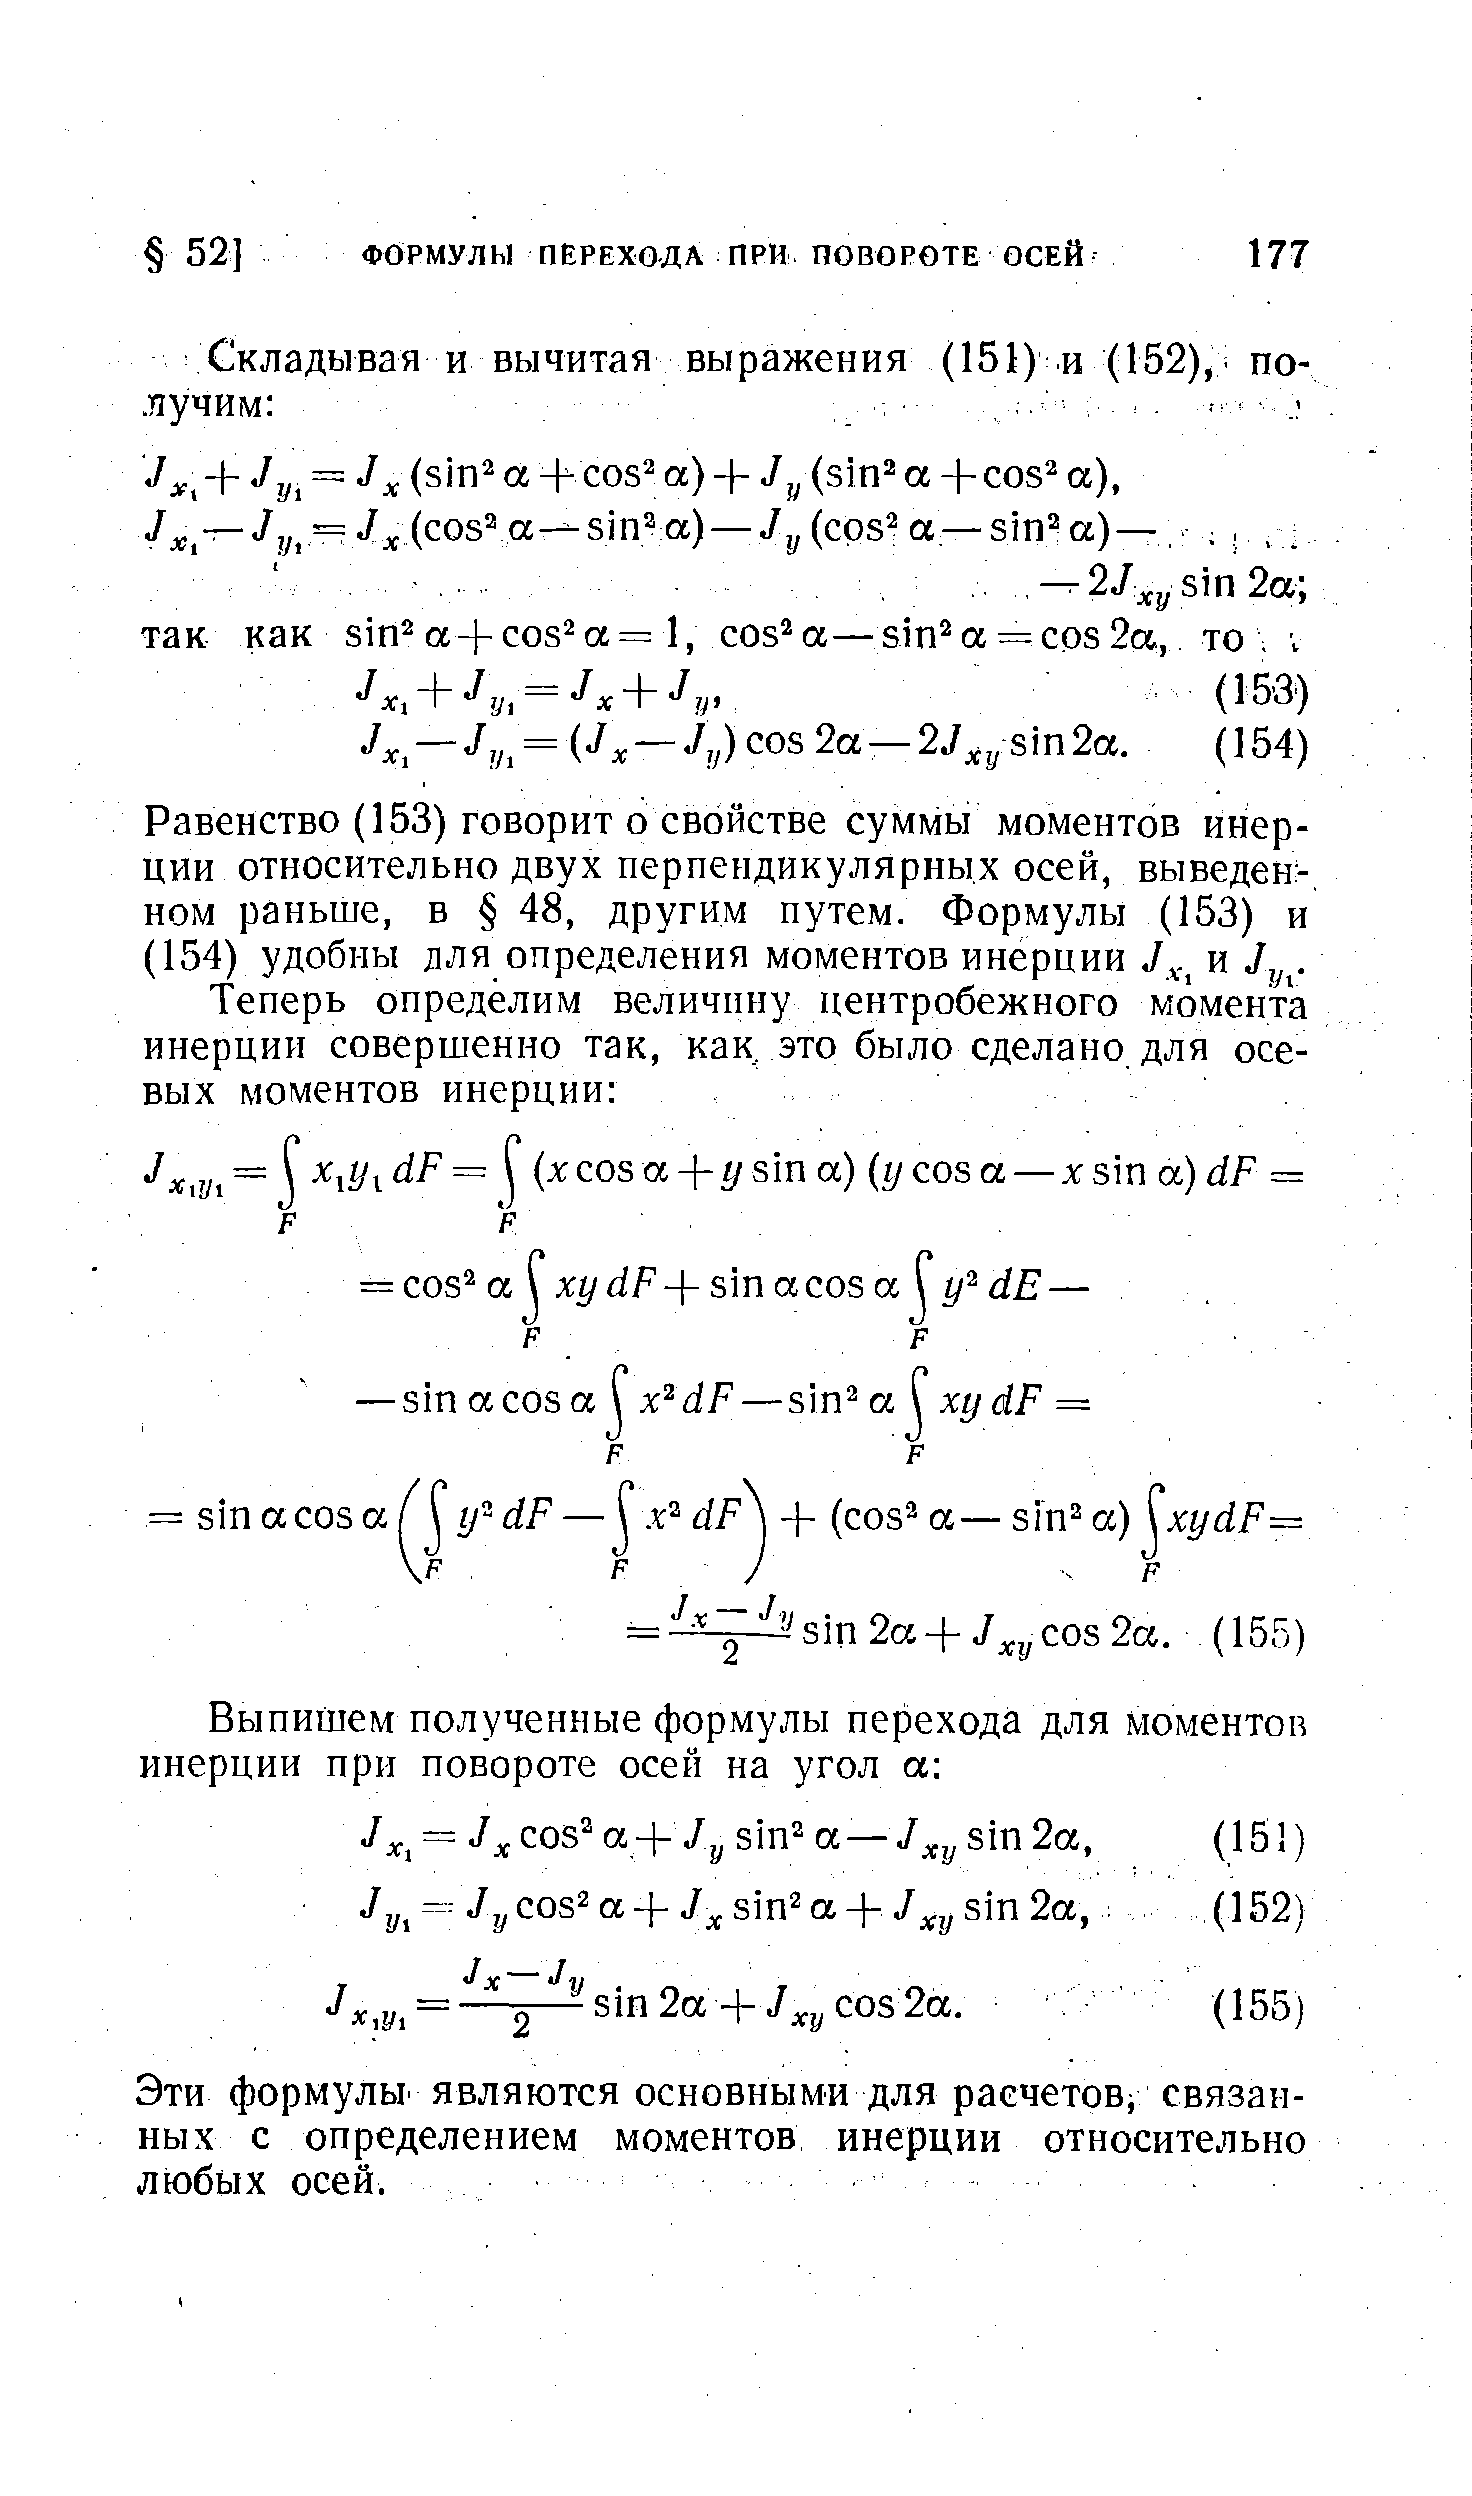 Эти формулы являются основными для расчетов связанных с определением моментов инерции относительно любых осей.
